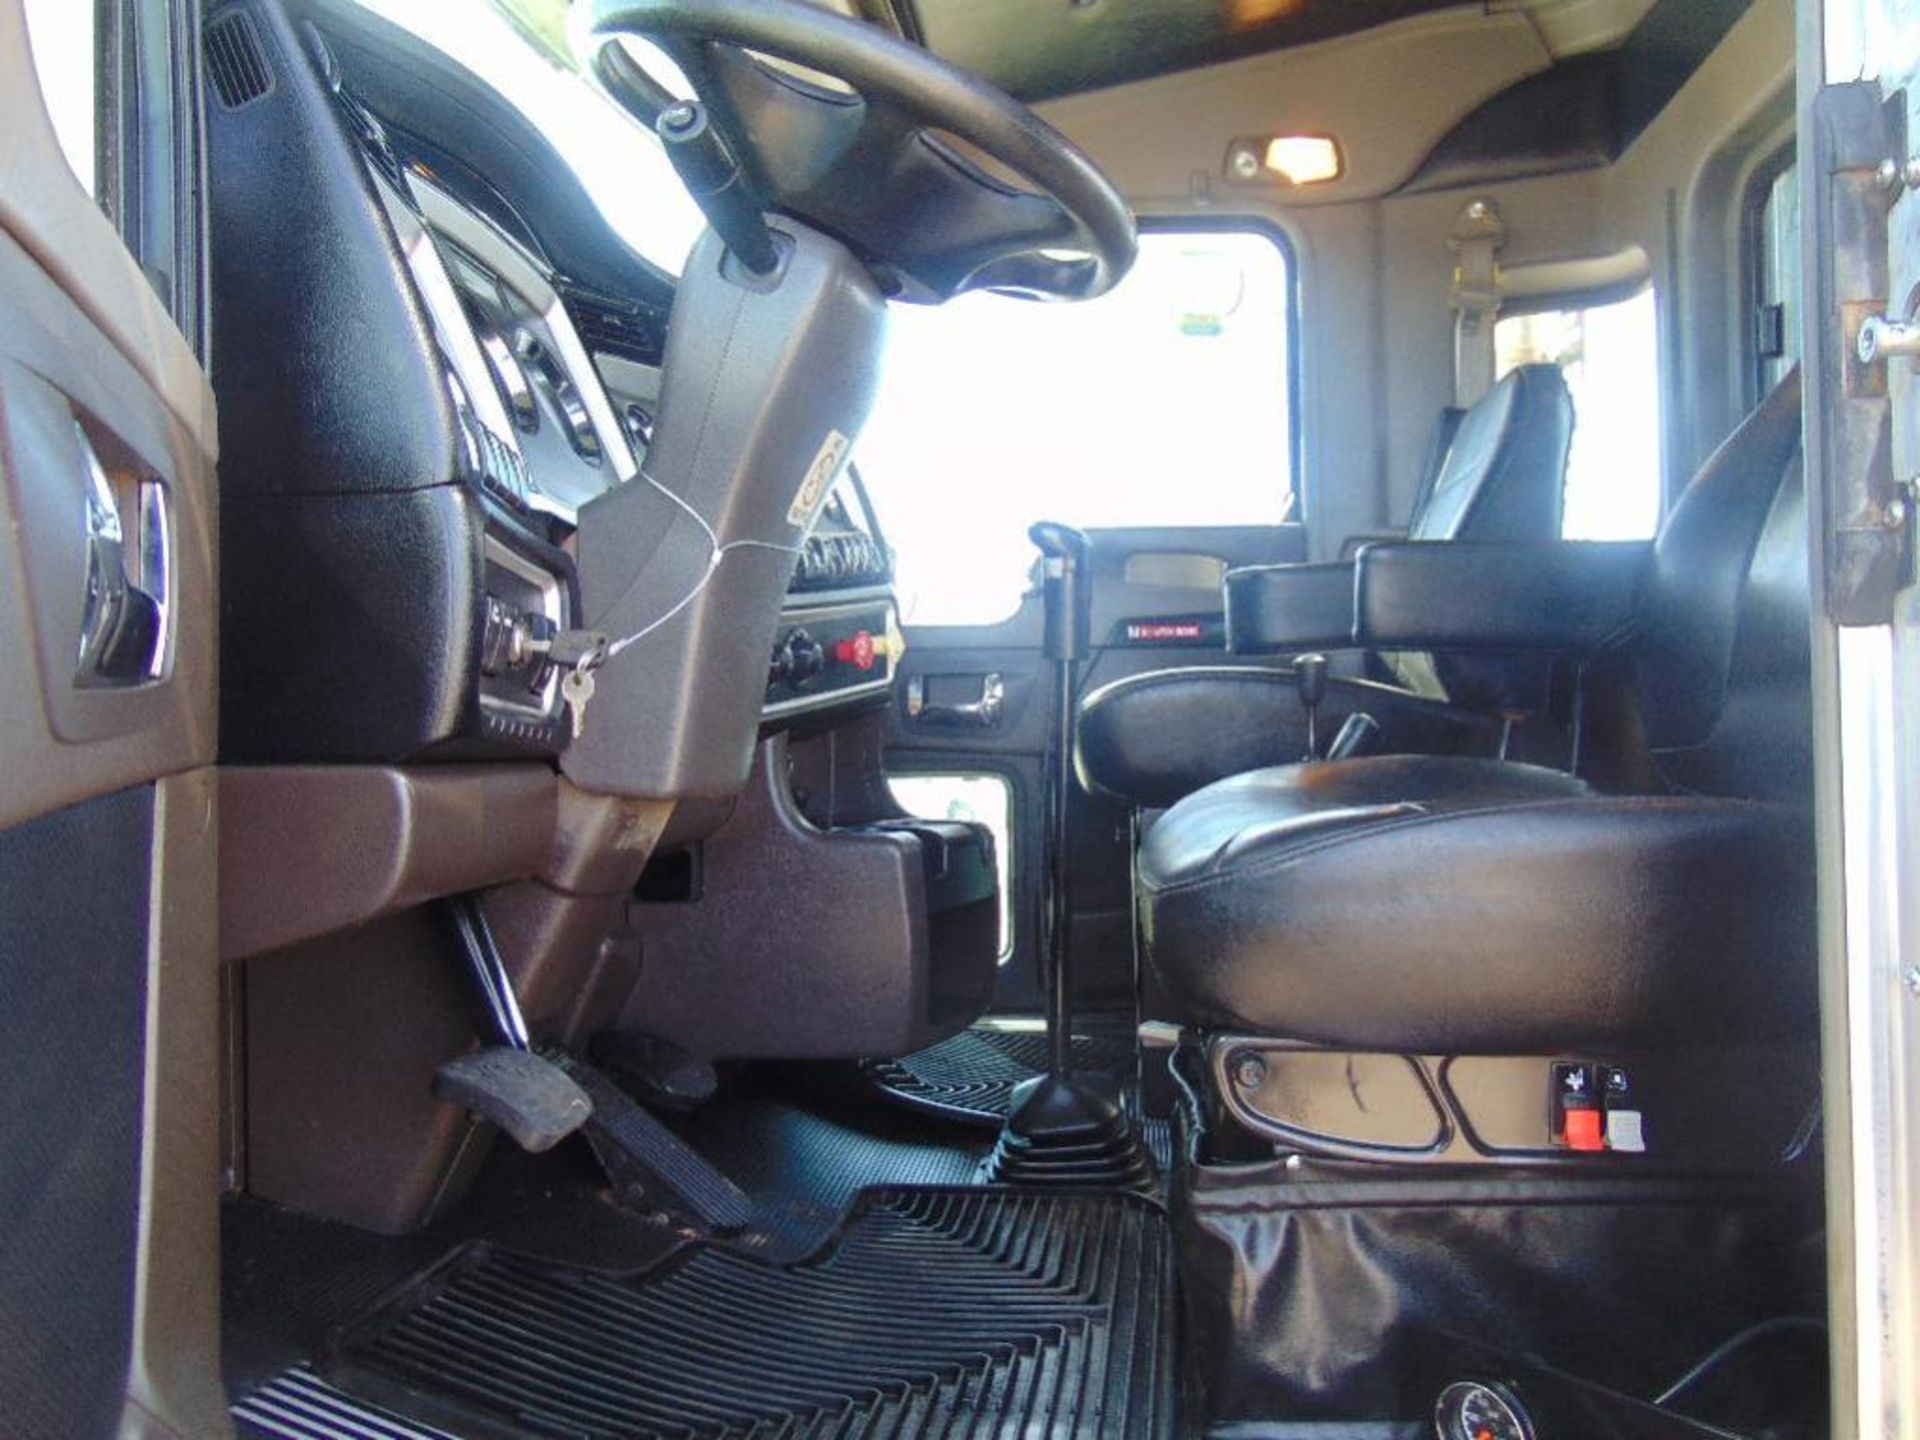 2014 Kenworth Triaxle Winch Truck, s/n 1xkdp4txxej408363,550 hp cummins,13 spd,145529 miles,hyd - Image 5 of 9